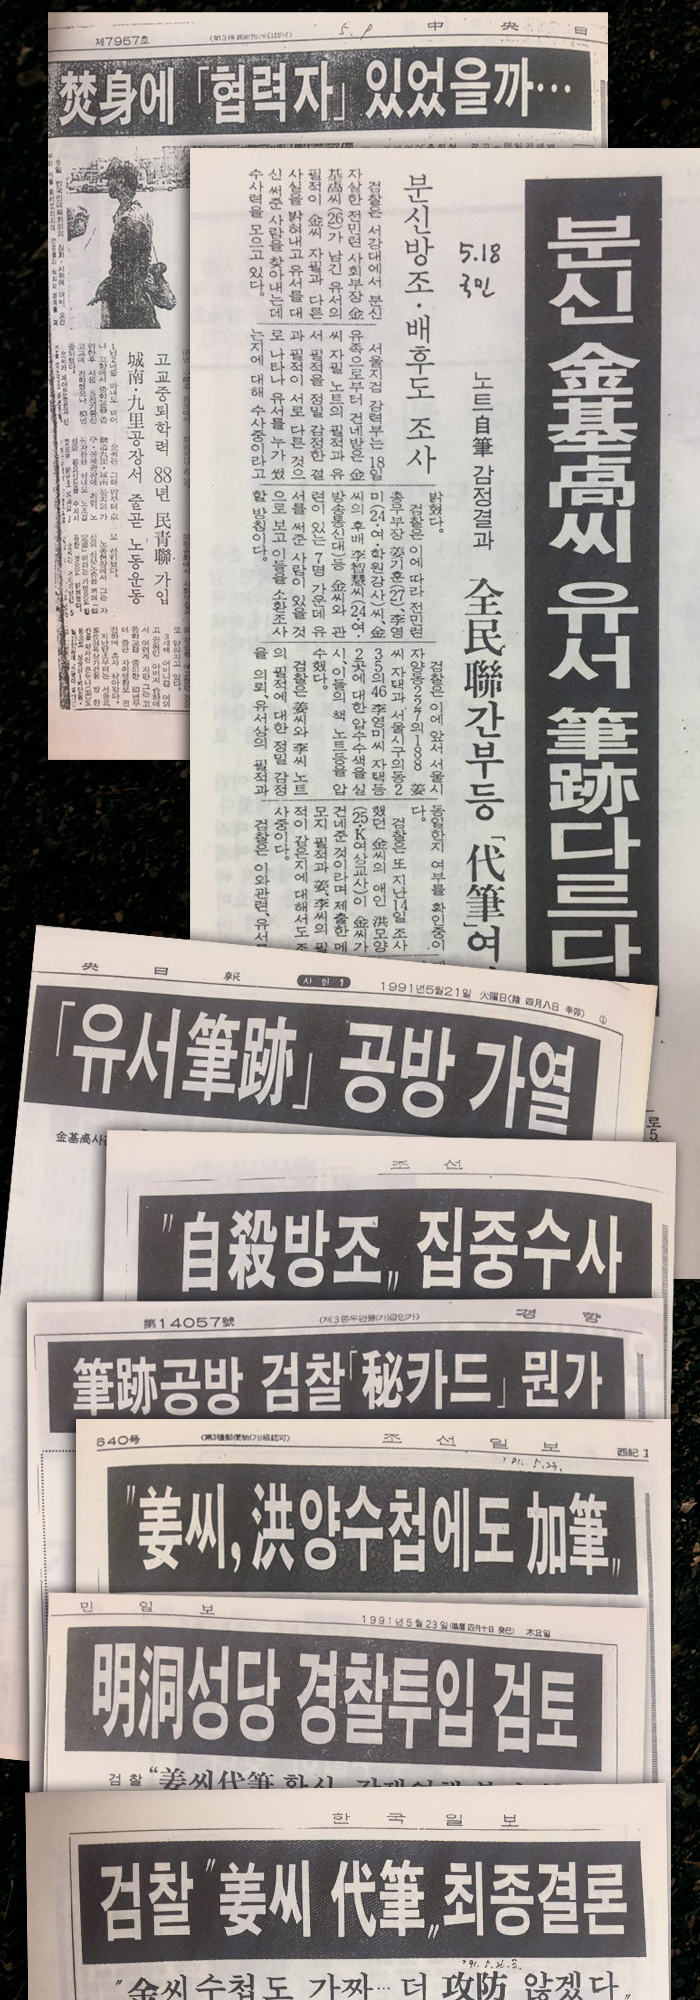 ▲ 1991년 강기훈 유서대필조작사건 당시 언론보도.